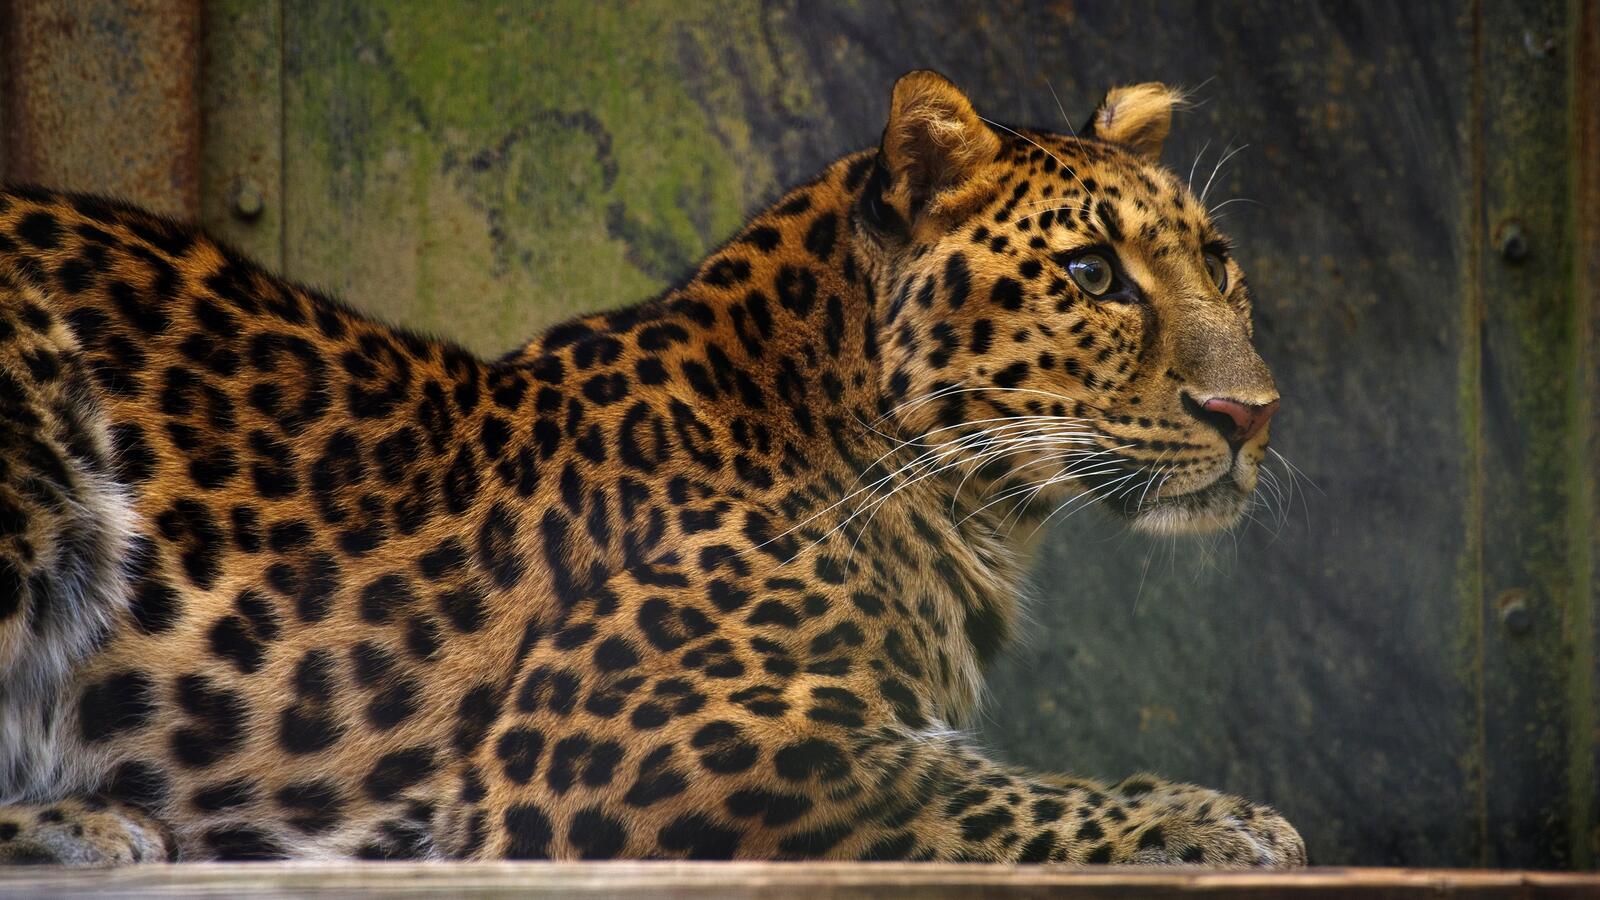 Wallpapers leopard looking away wildlife on the desktop